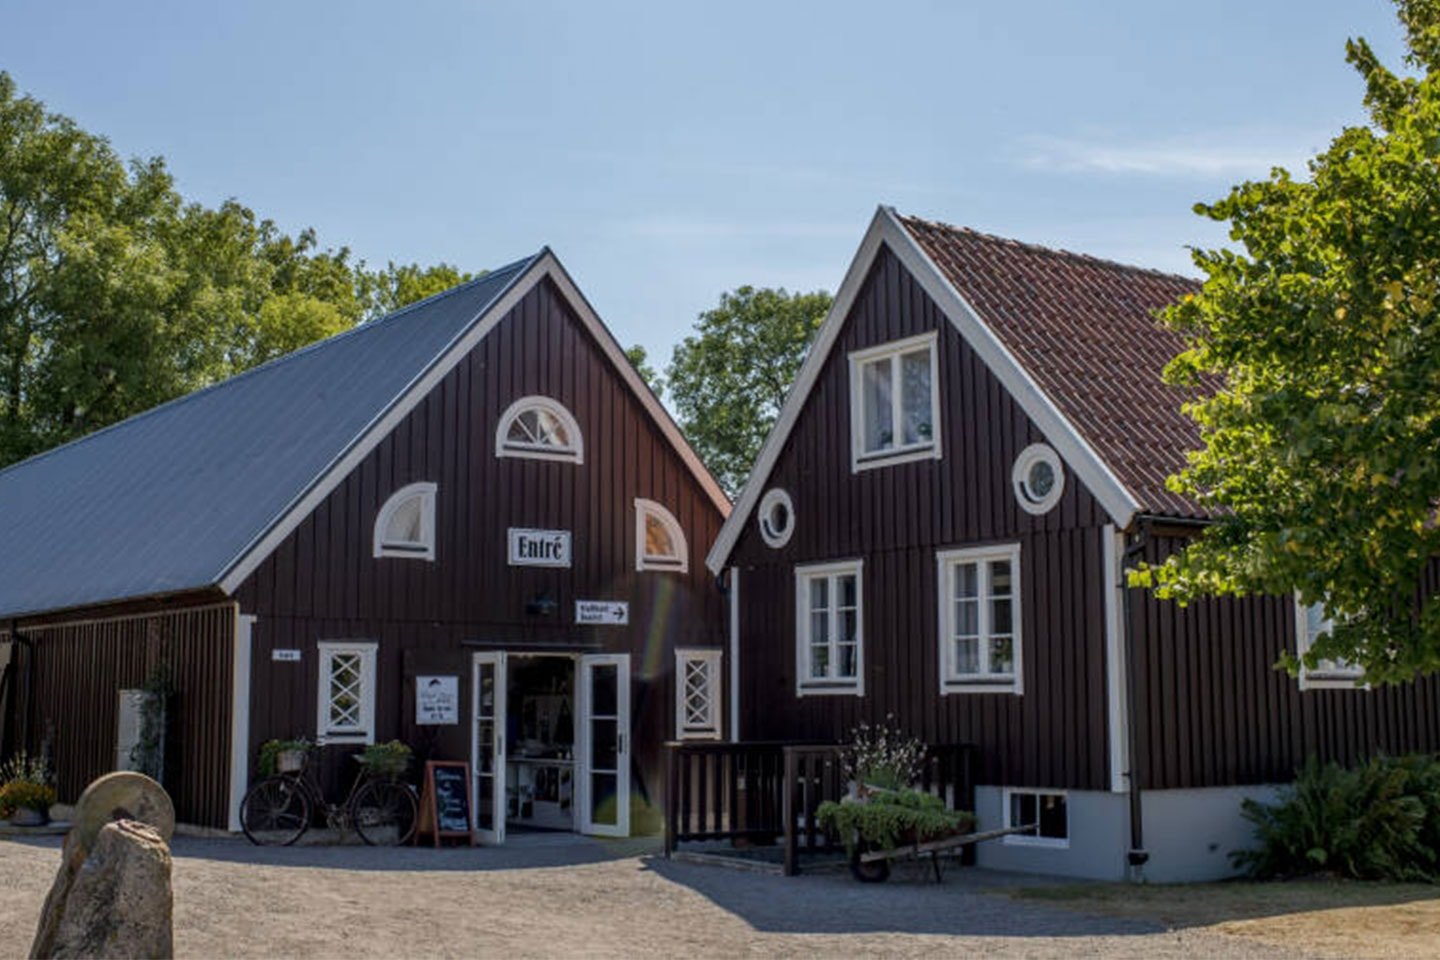 Boende på Hotell Hovs Hallar i Skåne (9 av 10)